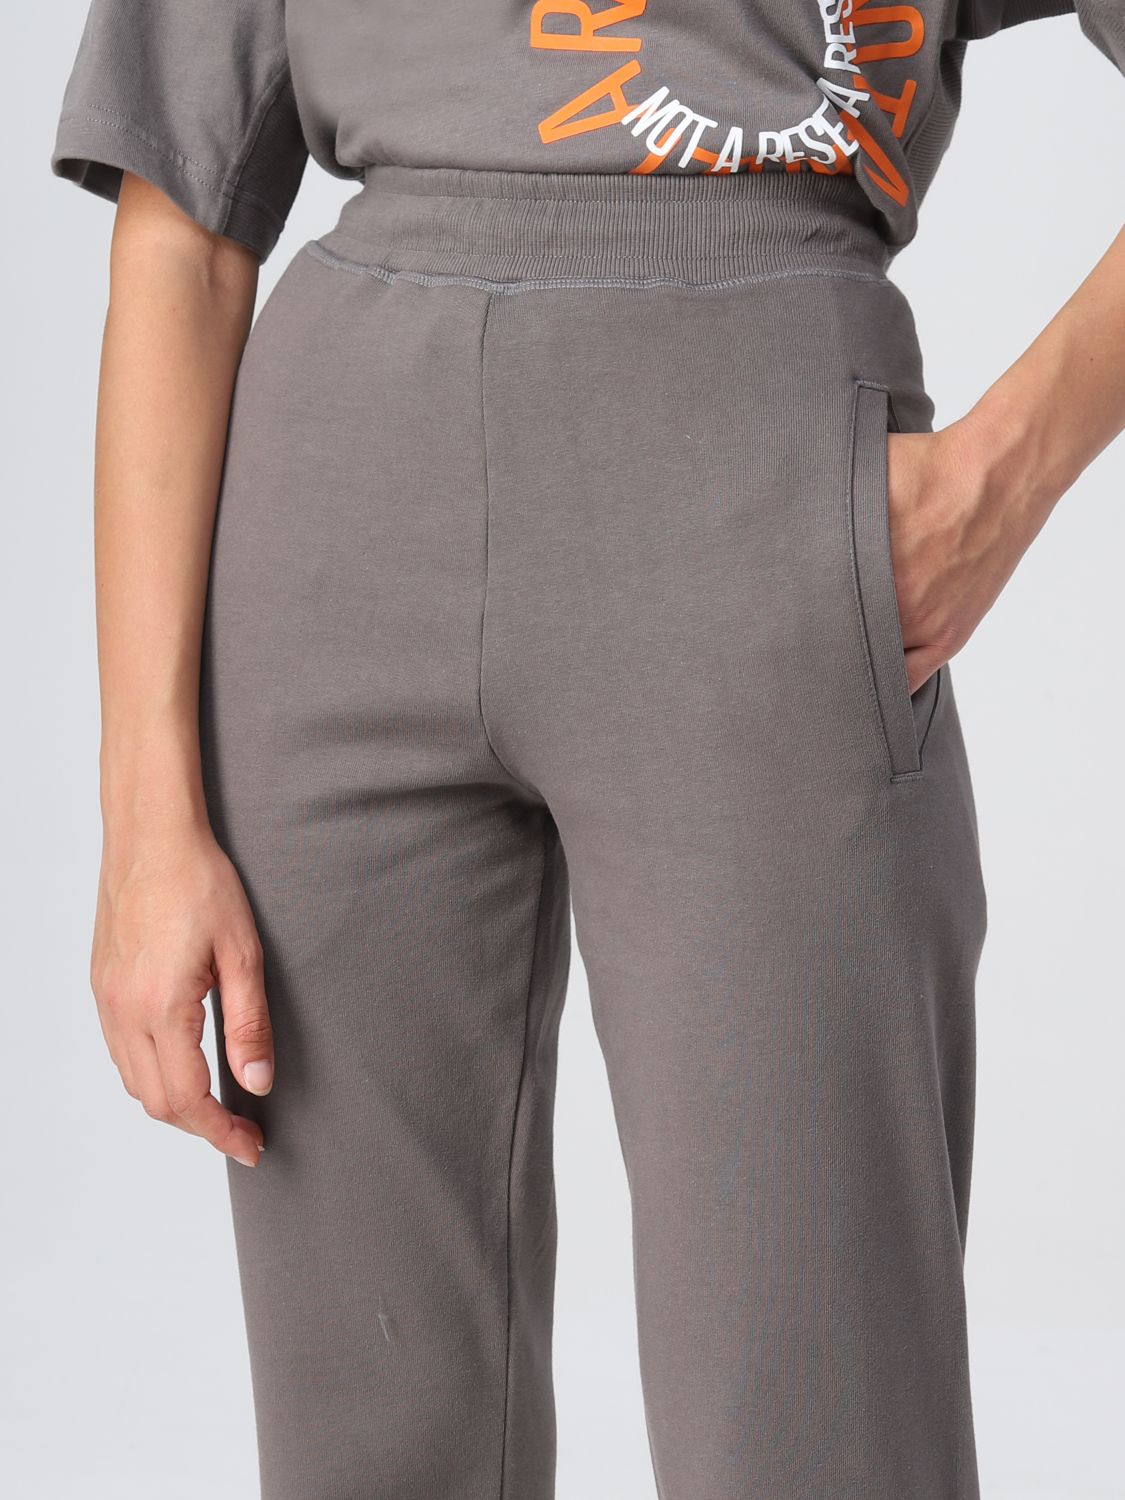 Pantalone Adidas By Stella Mccartney: Pantalone Adidas By Stella Mccartney donna grigio 5